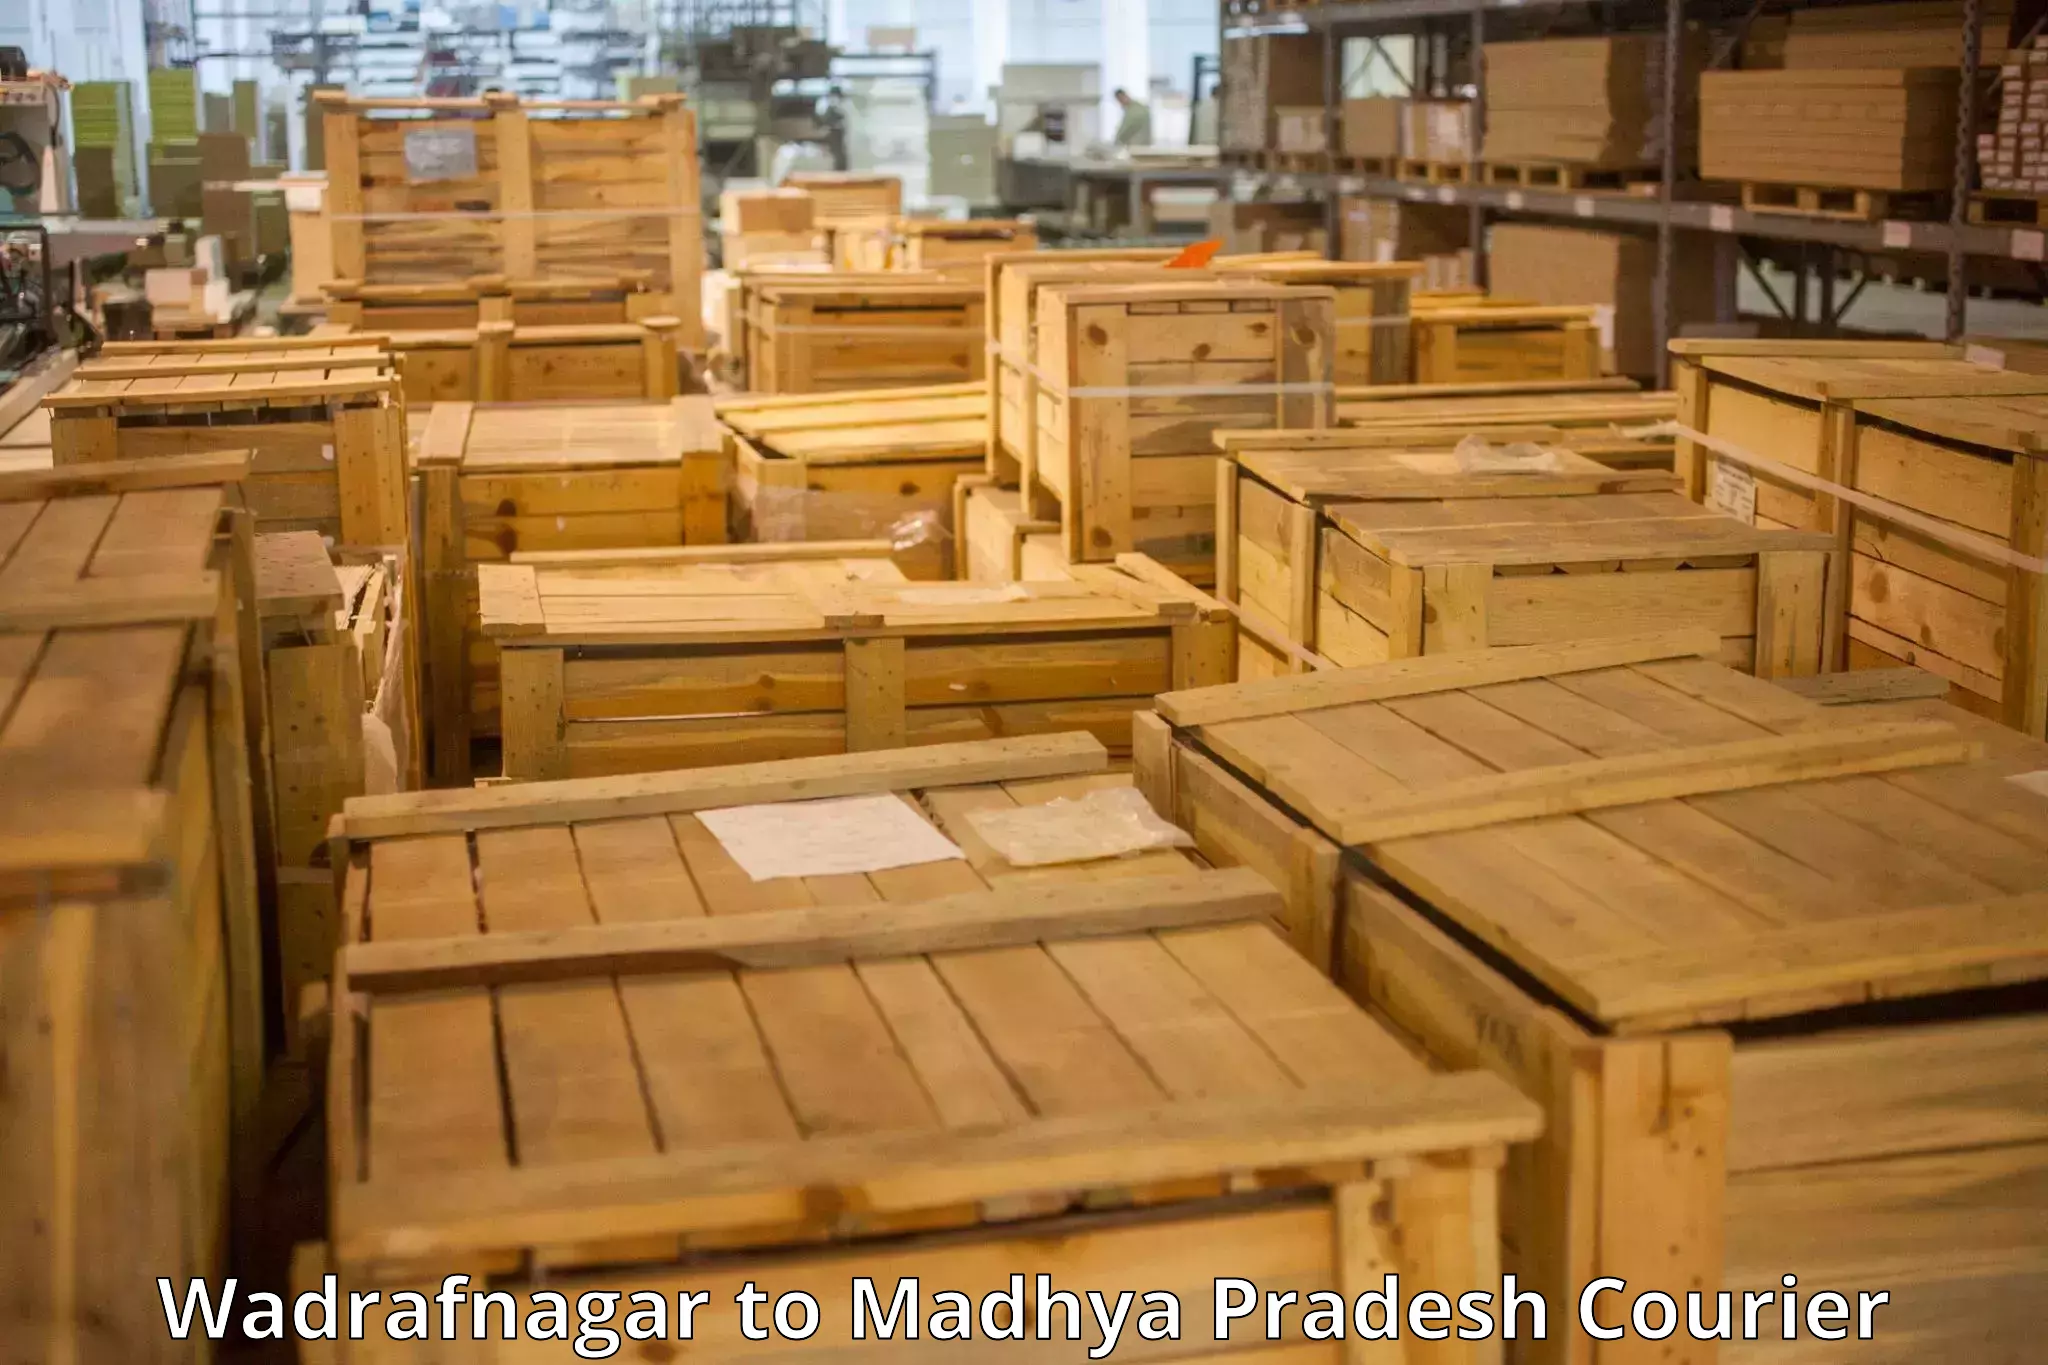 Luggage shipment specialists Wadrafnagar to Rehli